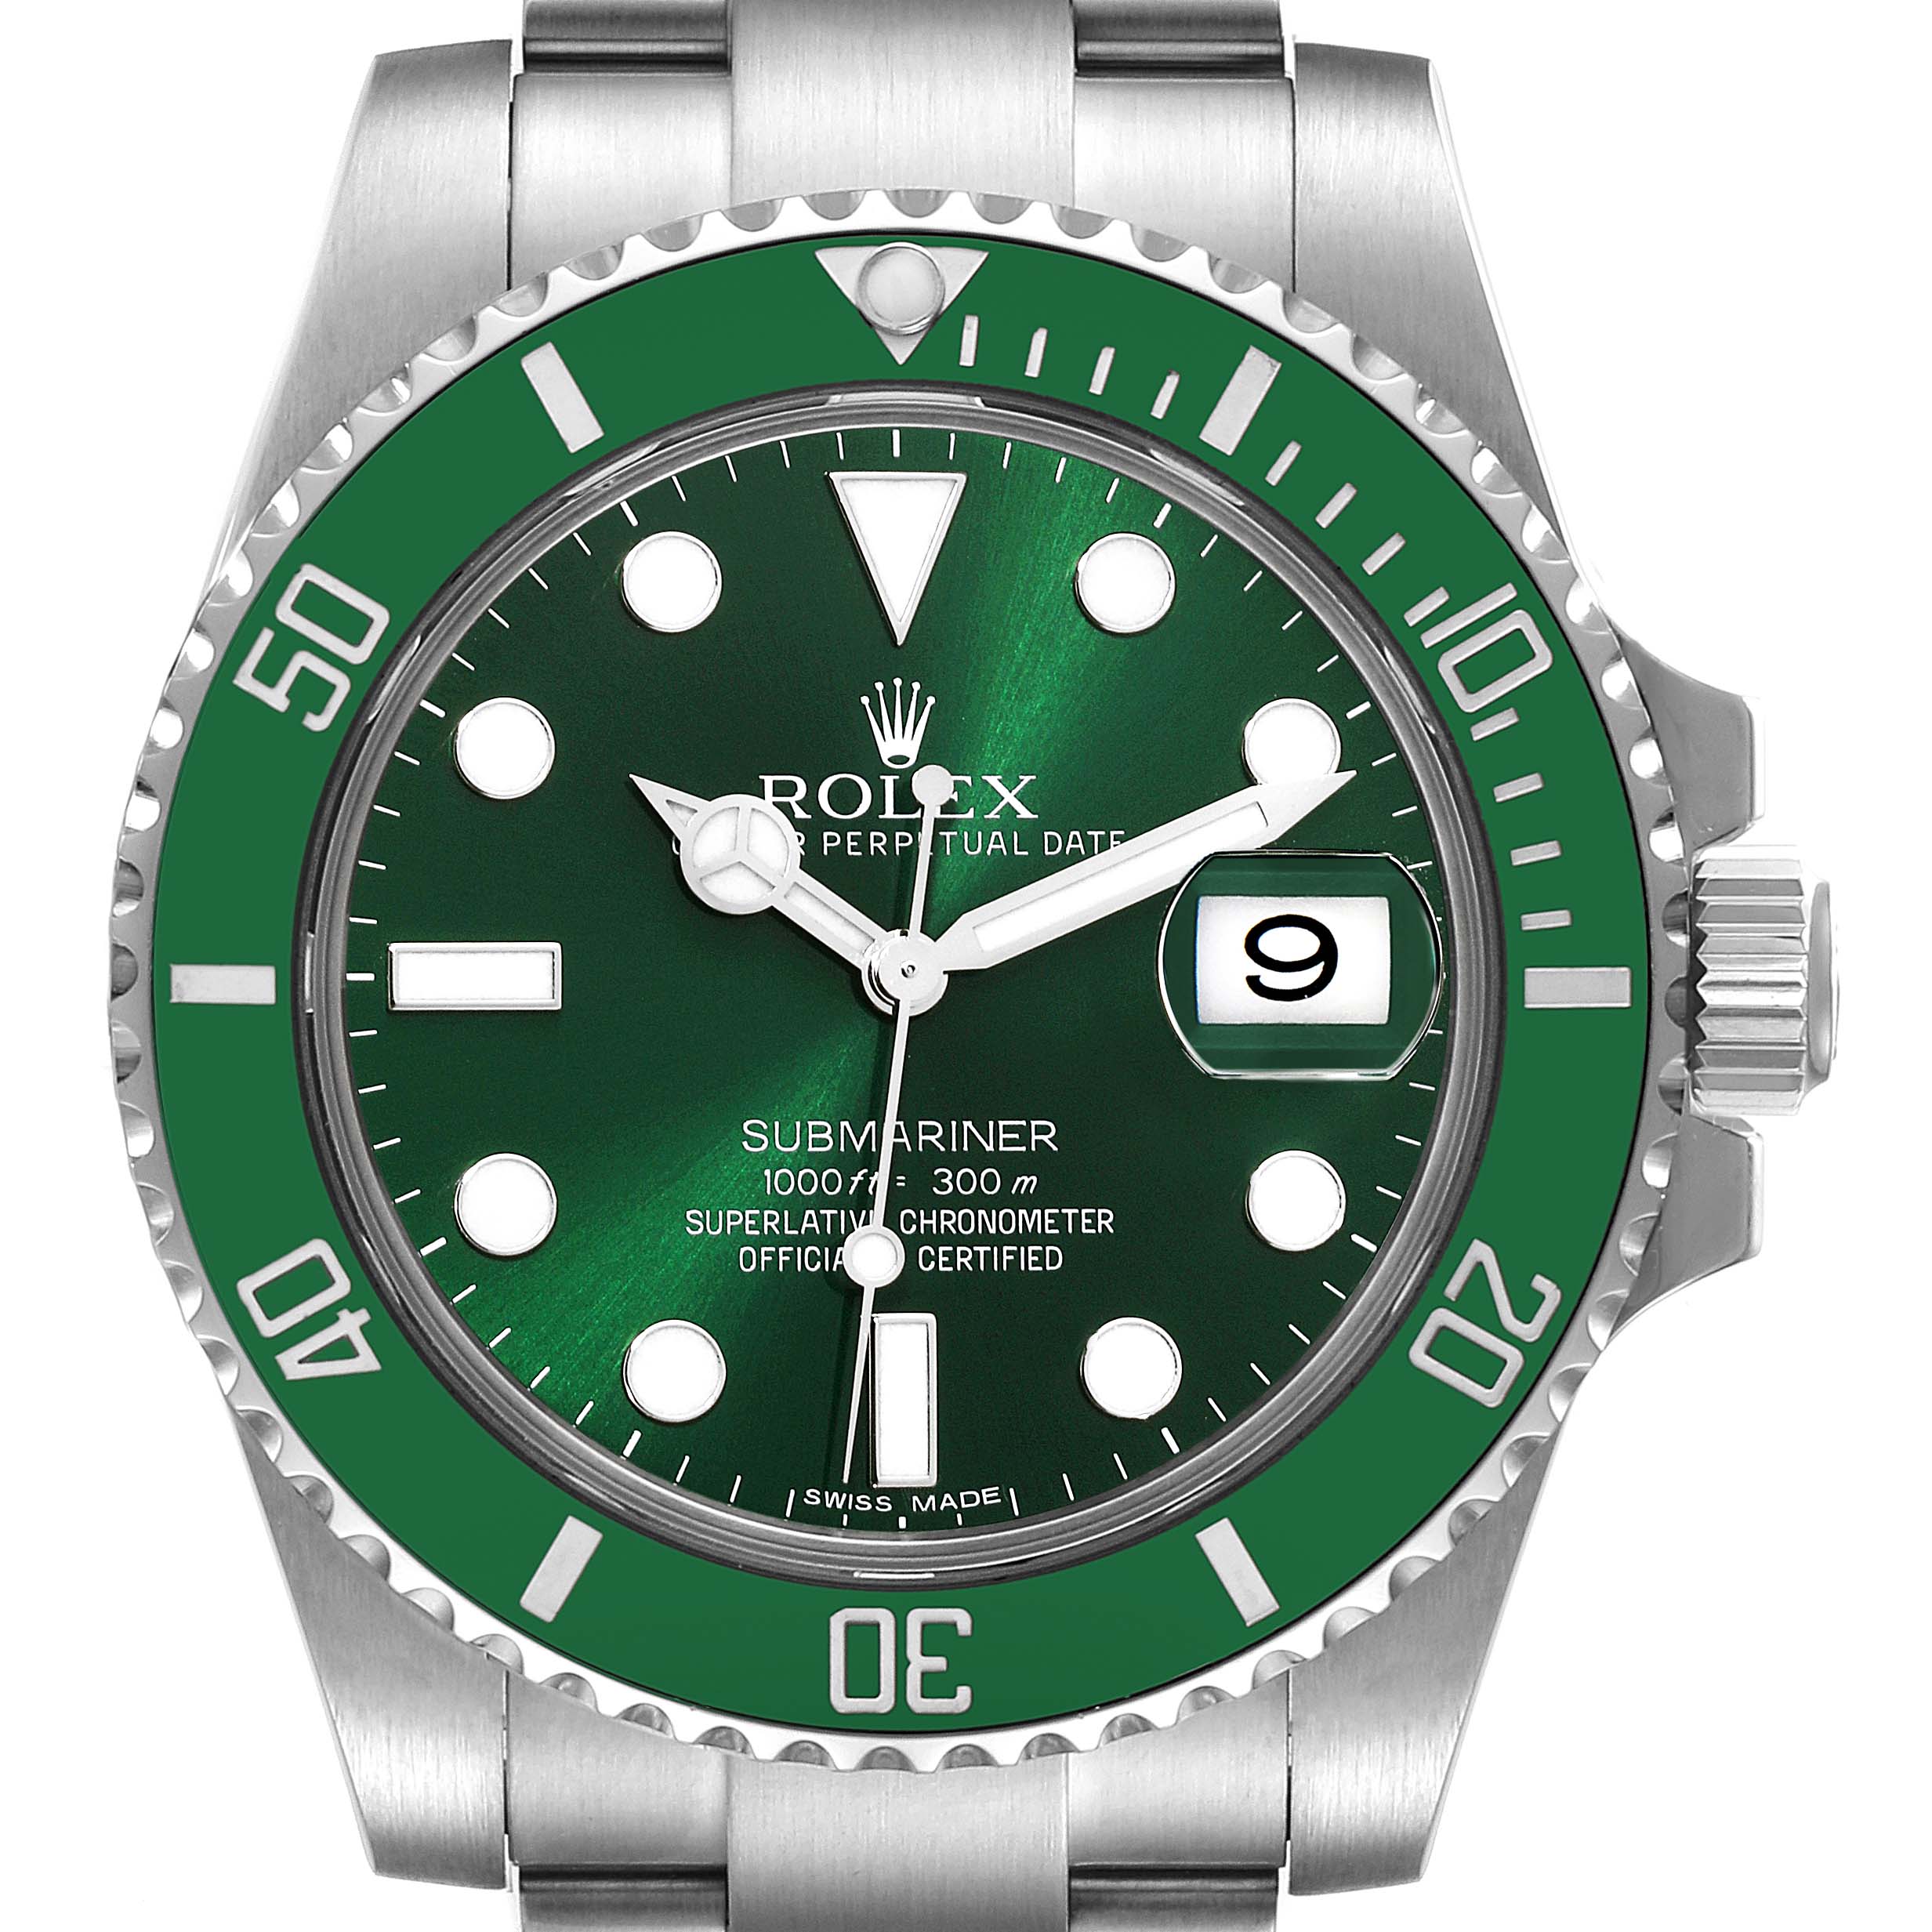 Rolex Submariner Date Watches, ref 116610LV, 116610LV - Hulk